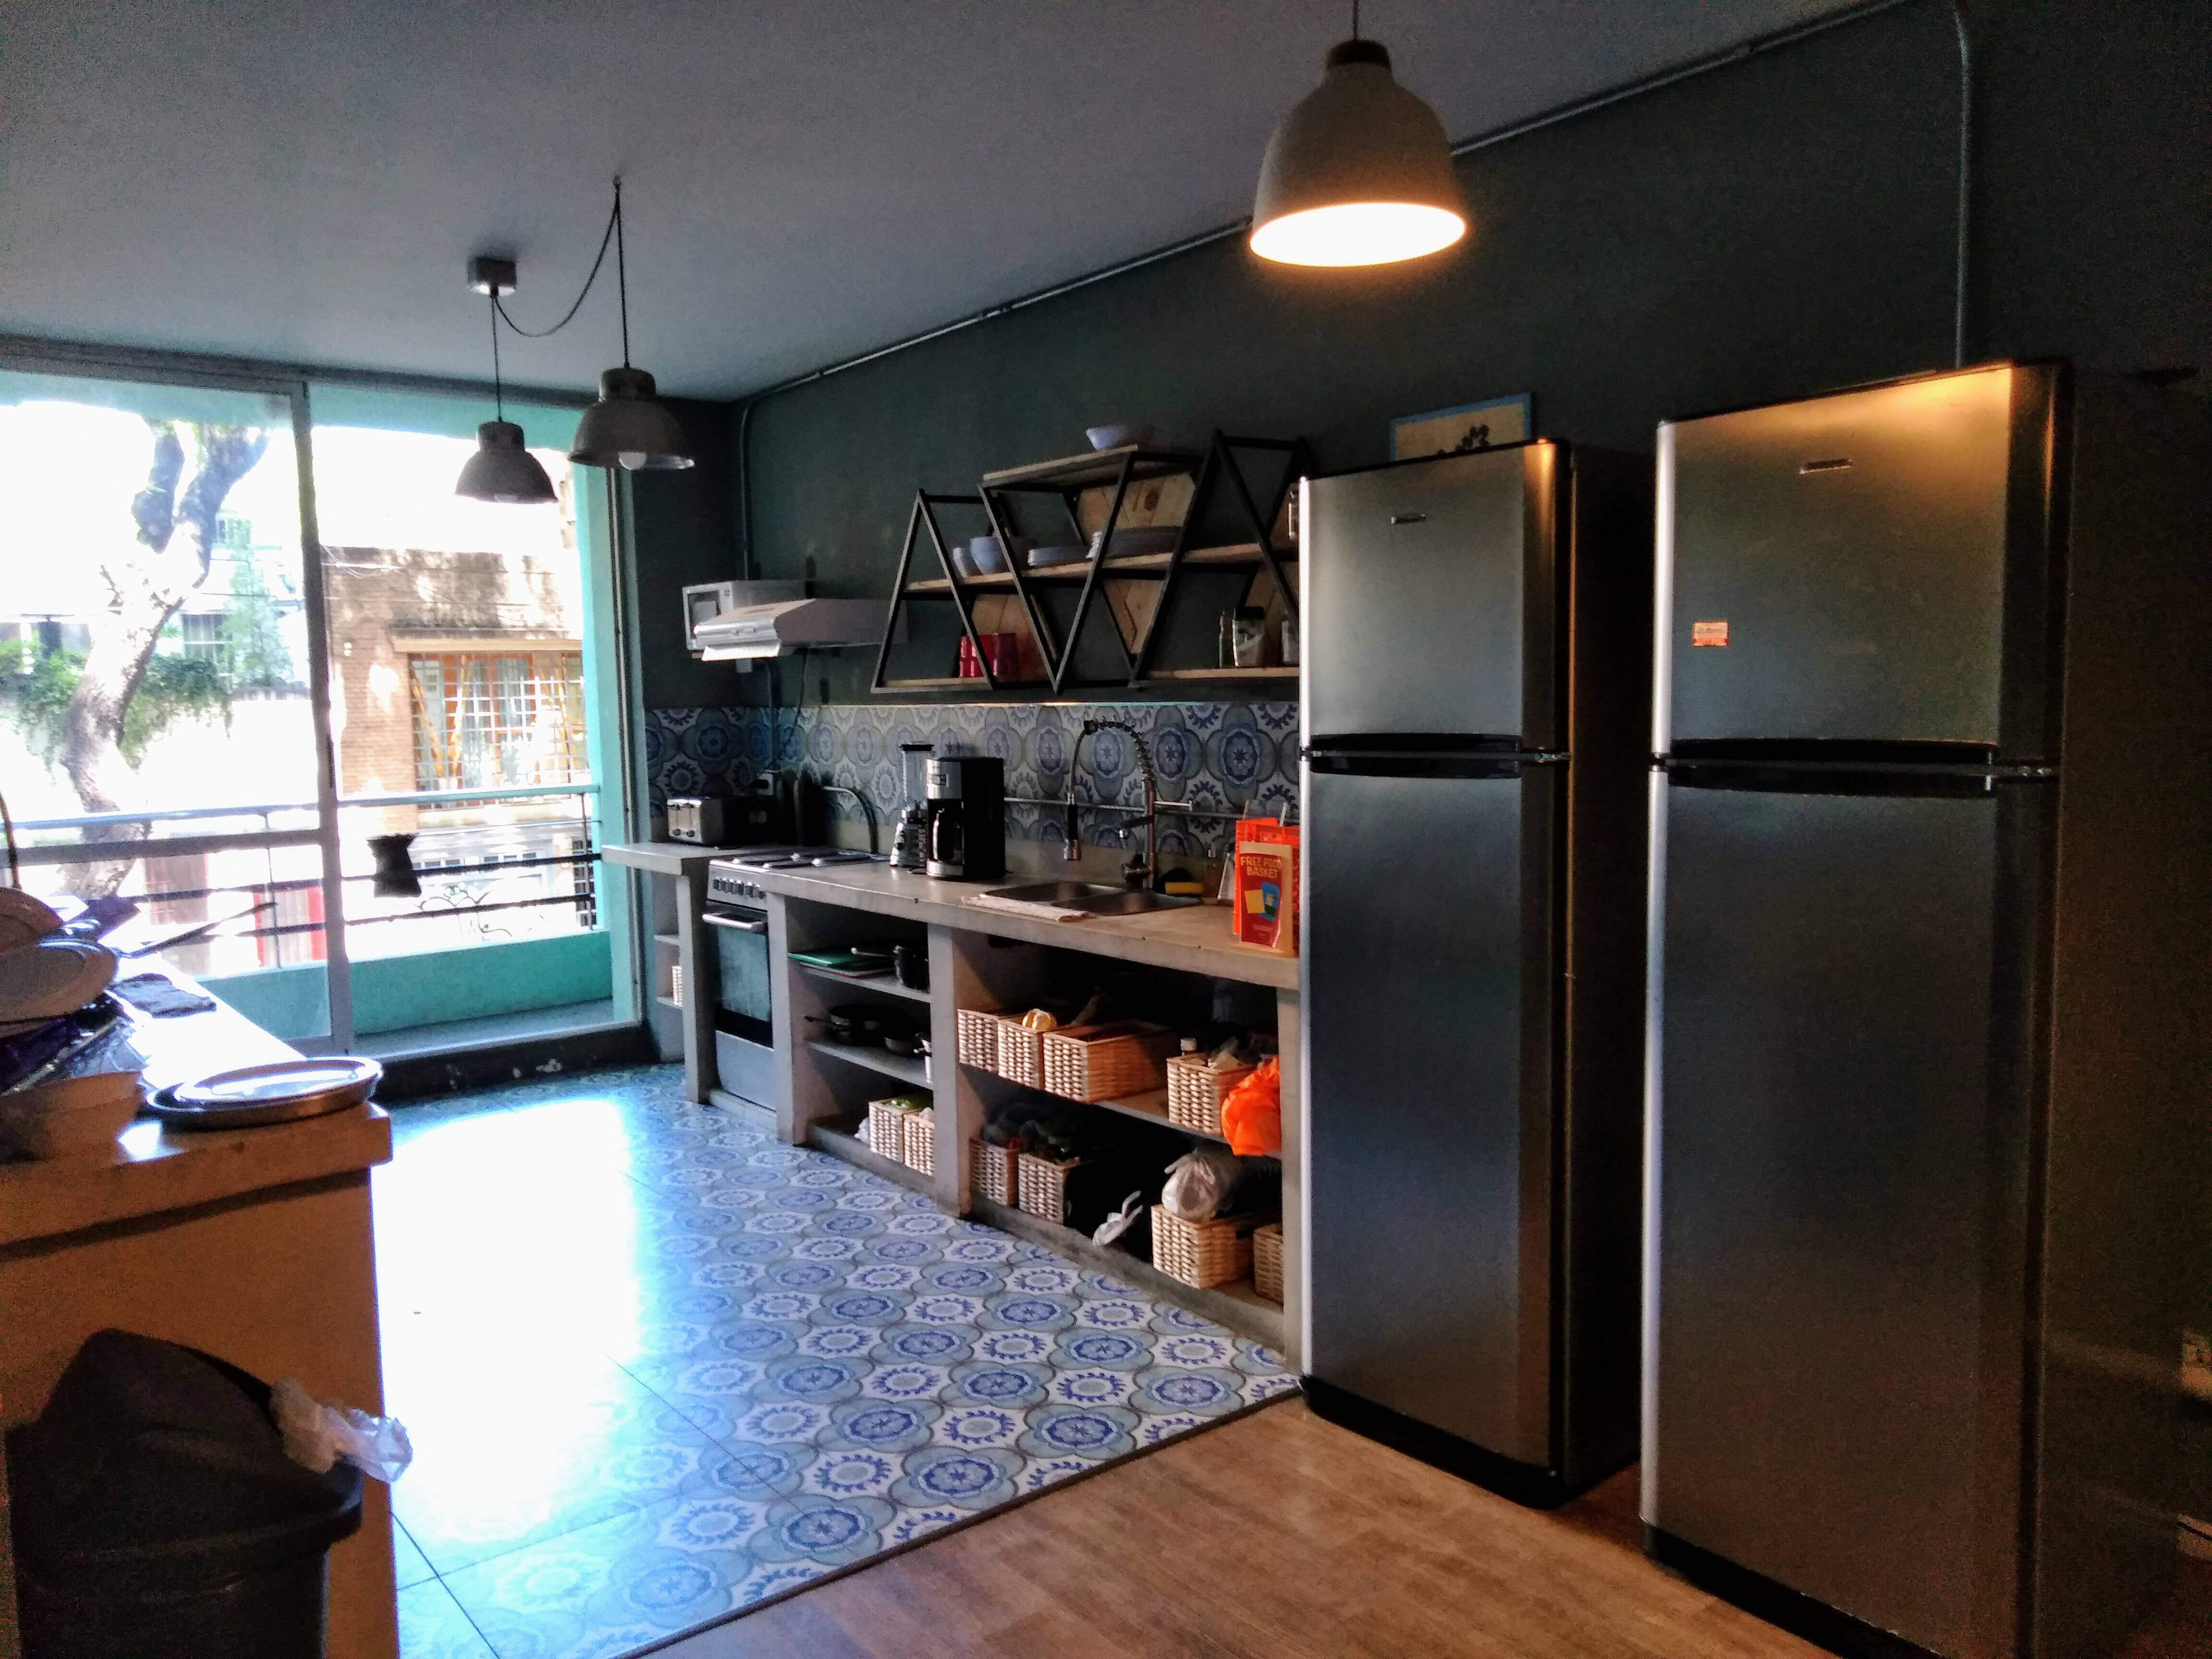 Cozinha compartilhada no Hostel Selina. Foto: Flavia Matos/ IG